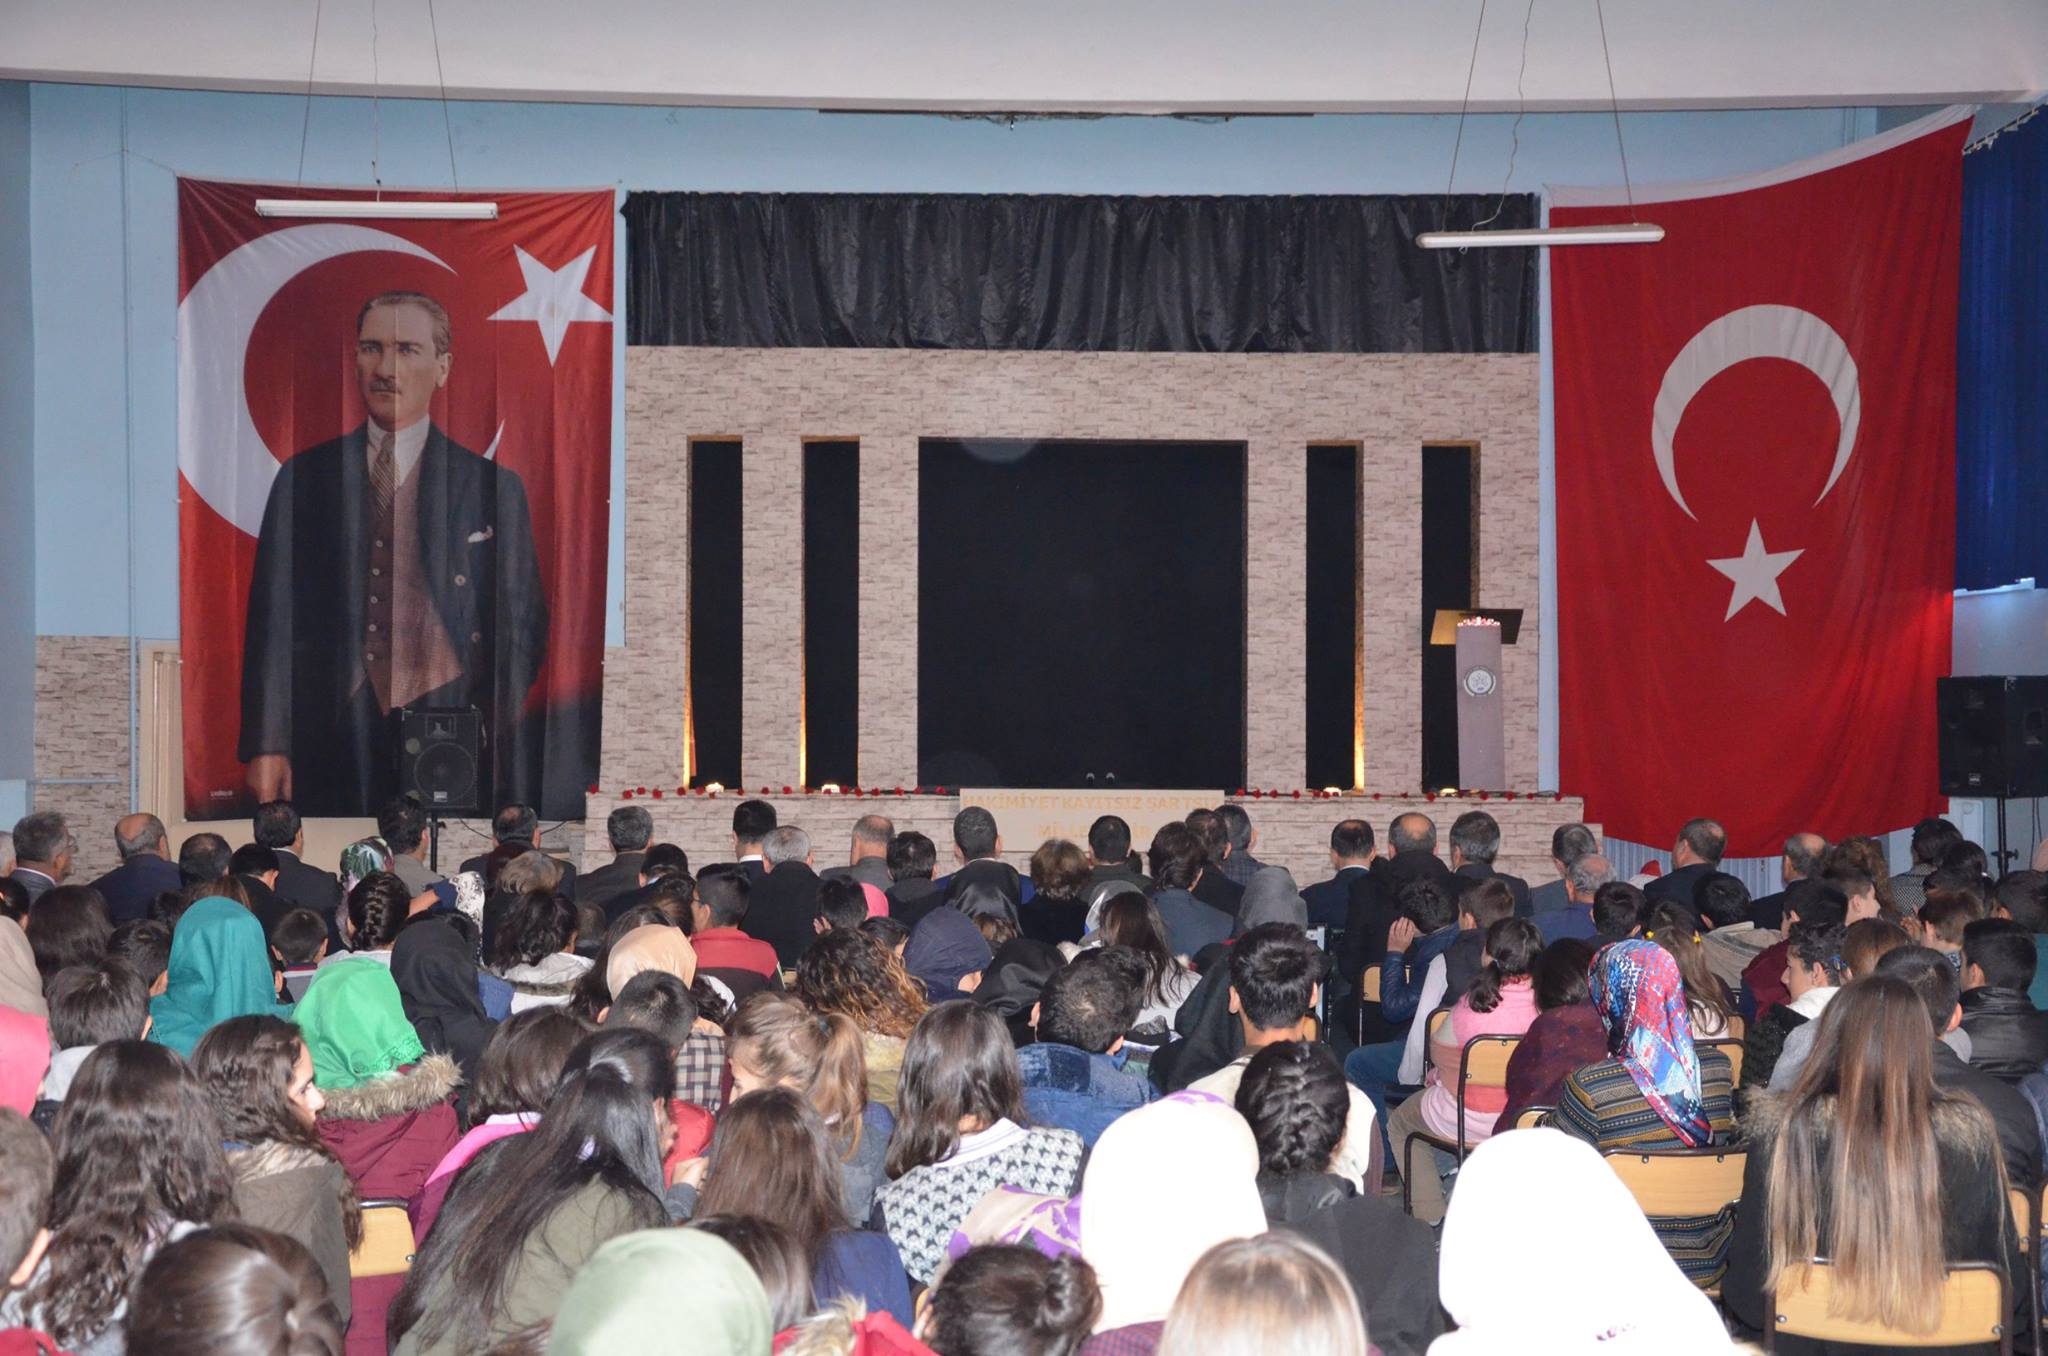 10 Kasım Atatürk’ü Anma Programı ilçemiz Endüstri Meslek Lisesinde Sivrihisar Kaymakamı Erdinç Yılmaz, Sivrihisar Hava Meydan ve Garnizon Komutanı Sadık Albayrak, Sivrihisar Belediye Başkanımız Hamid Yüzügüllü  katılımıyla gerçekleşti. Düzenlenen programda Gazi Mustafa Kemal Atatürk, silah arkadaşları ve tüm şehitlerimiz saygı ve rahmet ile anıldı.